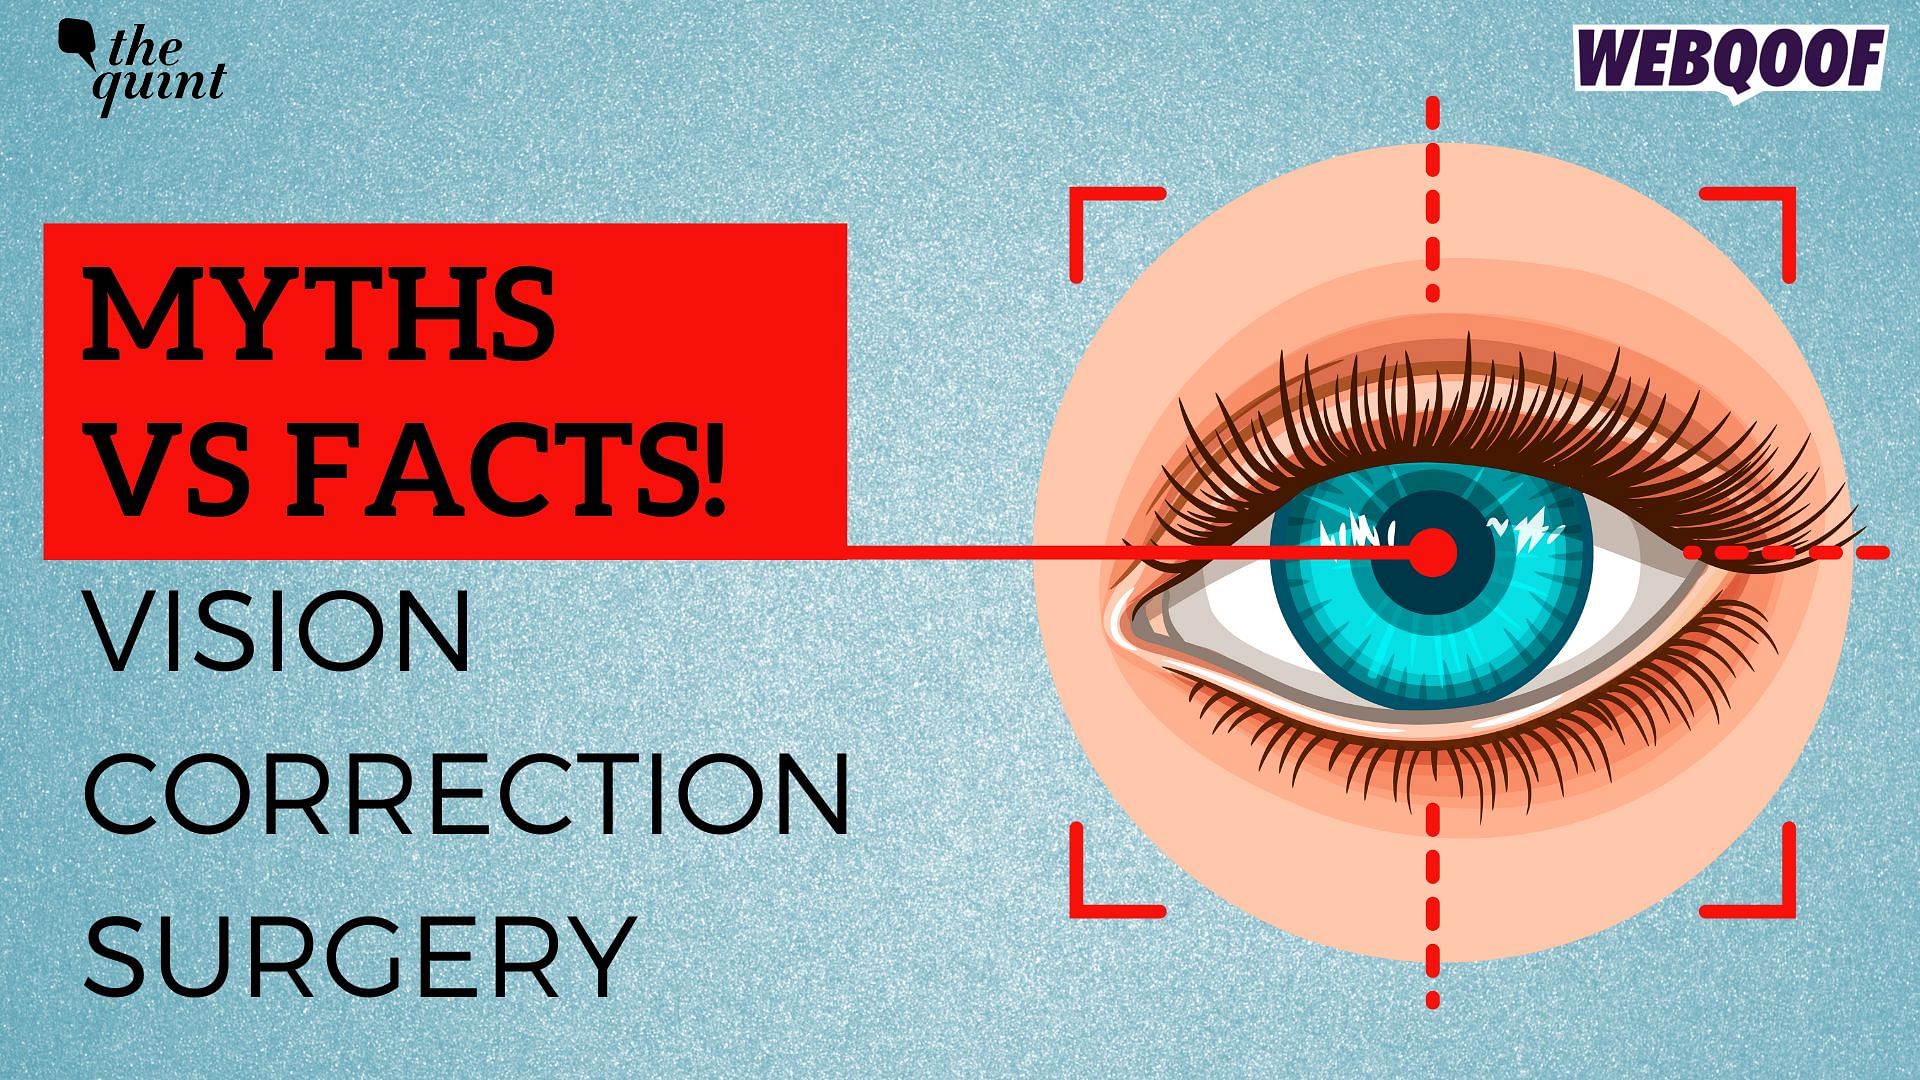 <div class="paragraphs"><p>Myths vs facts: Vision correction surgeries.</p></div>